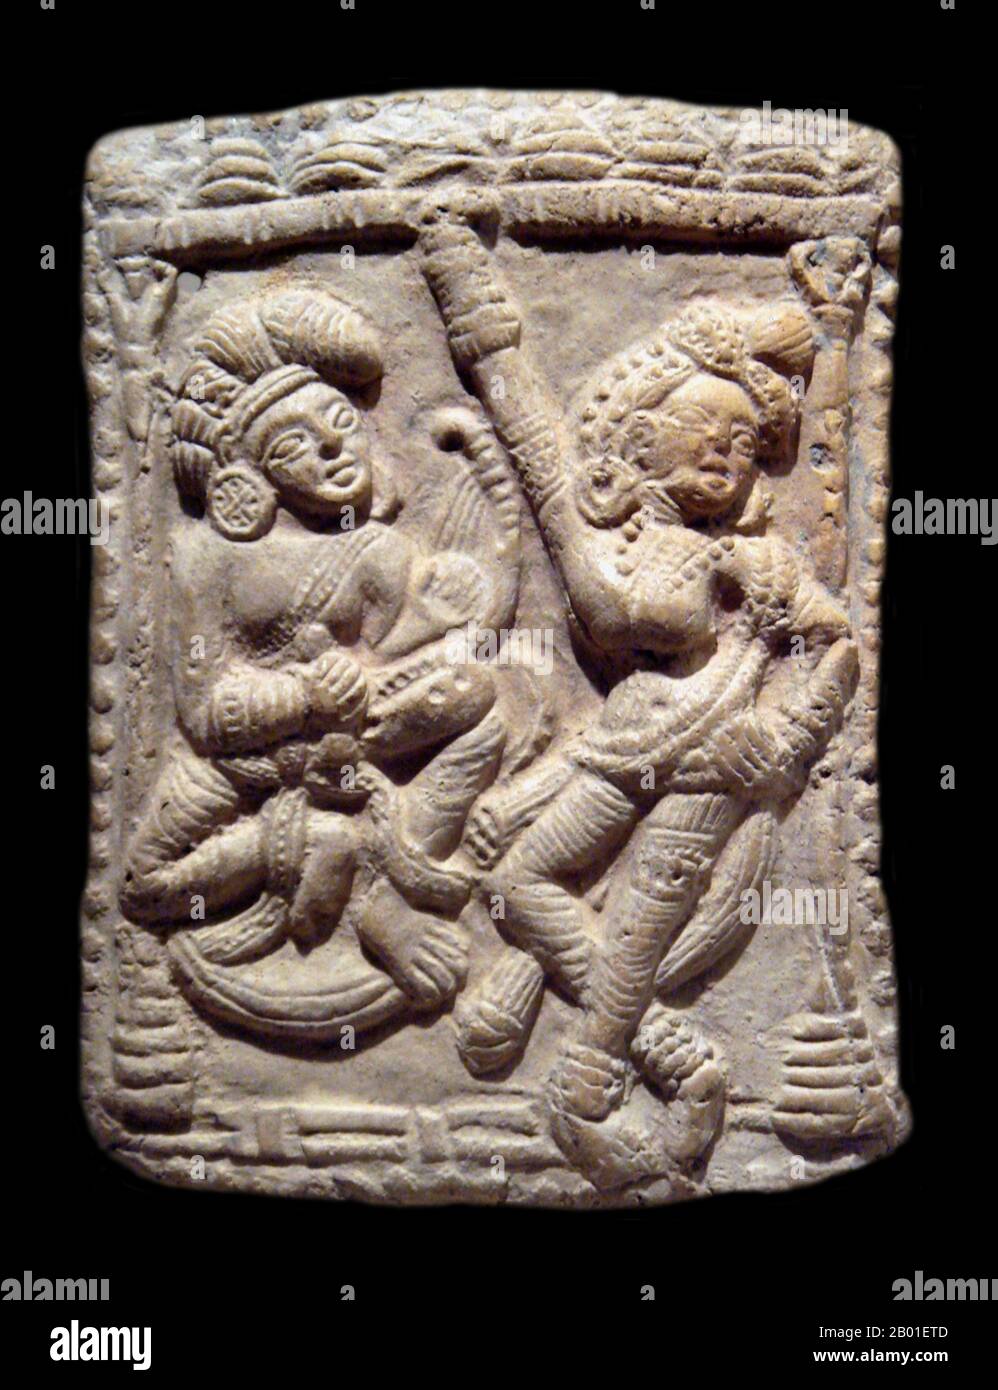 Indien/Bangladesch: Tänzer und Musiker im Königspalast, Bengal, Sunga-Dynastie, c. 1. Century BCE. Foto von Uploadalt (CC BY-SA 3,0 Lizenz). Das Sunga-Imperium oder Shunga-Imperium war eine königliche indische Dynastie aus Magadha, die weite Gebiete des indischen Subkontinents von etwa 185 bis 73 BCE kontrollierte. Die Dynastie wurde von Pusyamitra Sunga nach dem Fall des Maurya-Reiches gegründet. Seine Hauptstadt war Pataliputra, aber später hielten Kaiser wie Bhagabhadra auch den Hof in Vidisha, dem modernen Besnagar im Osten von Malwa. Stockfoto